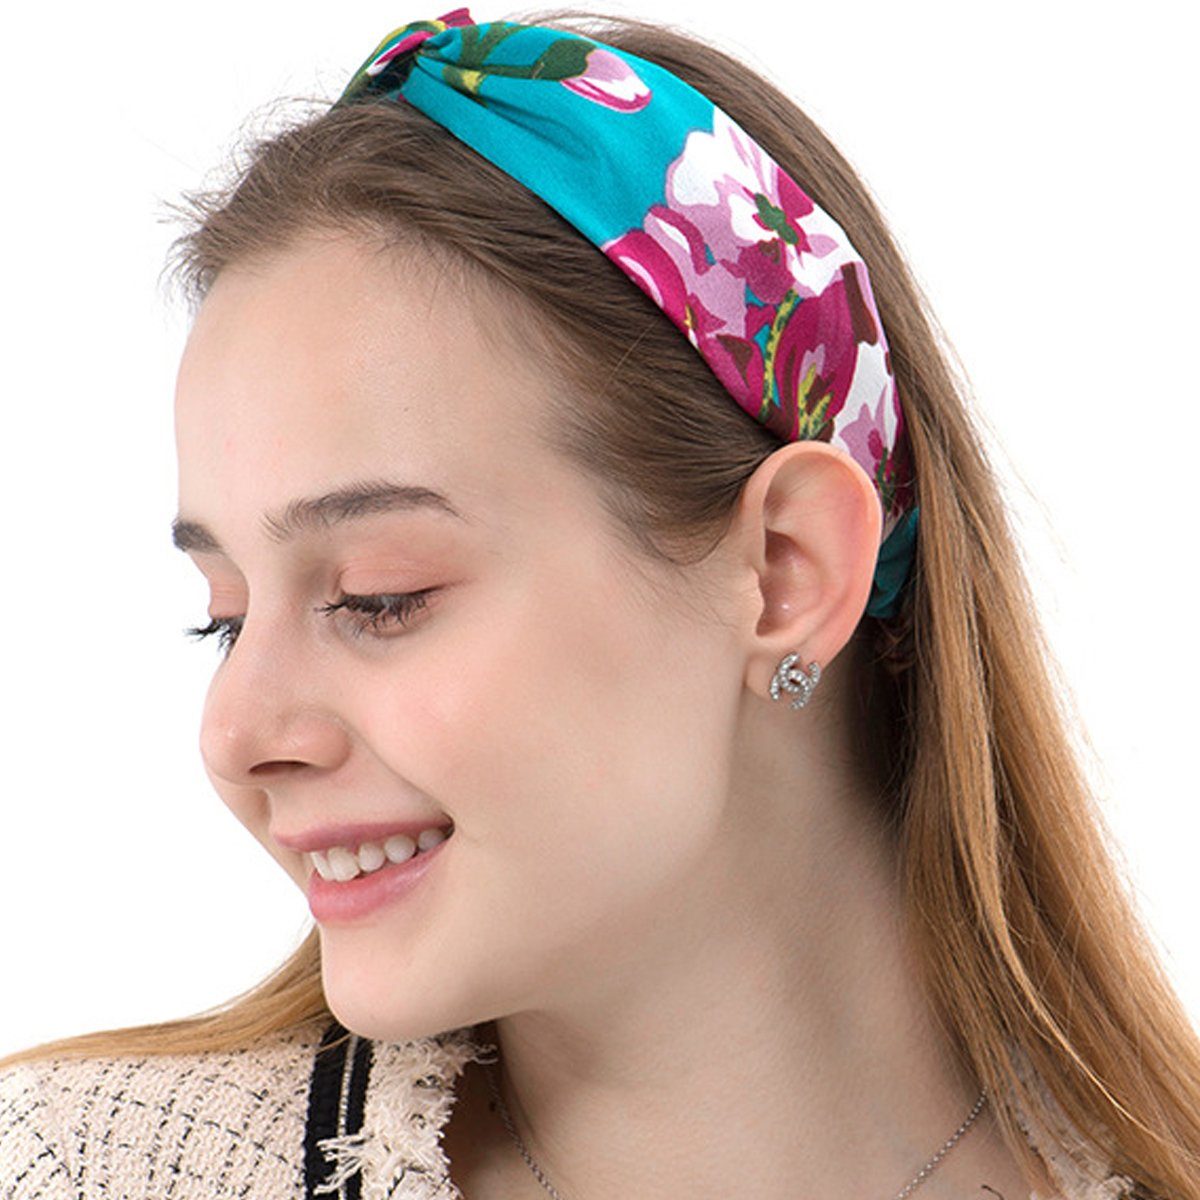 Jormftte Stirnband Make-Up-Stirnbänder für Damen,Vintage-Stil, Mehrfarbig1 gestrickt,elastisch